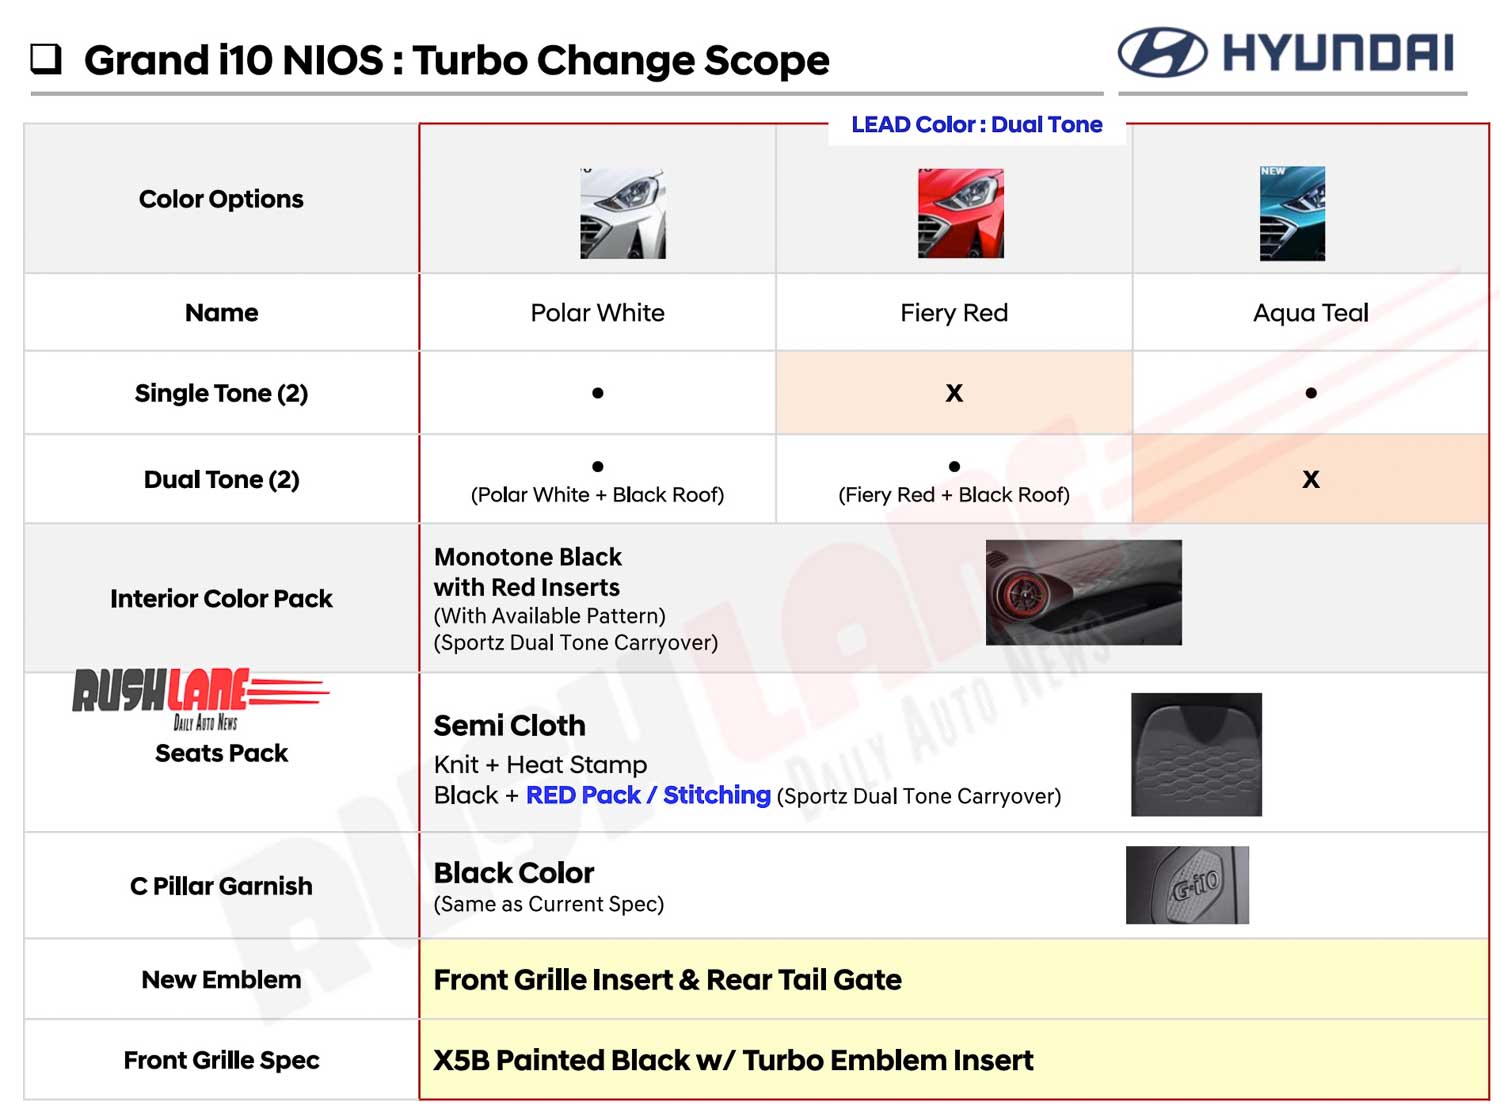 Hyundai Grand i10 NIOS turbo changes